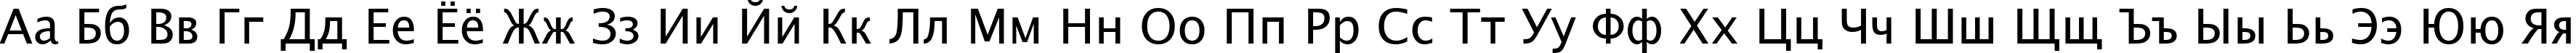 Пример написания русского алфавита шрифтом Lucida Sans Unicode